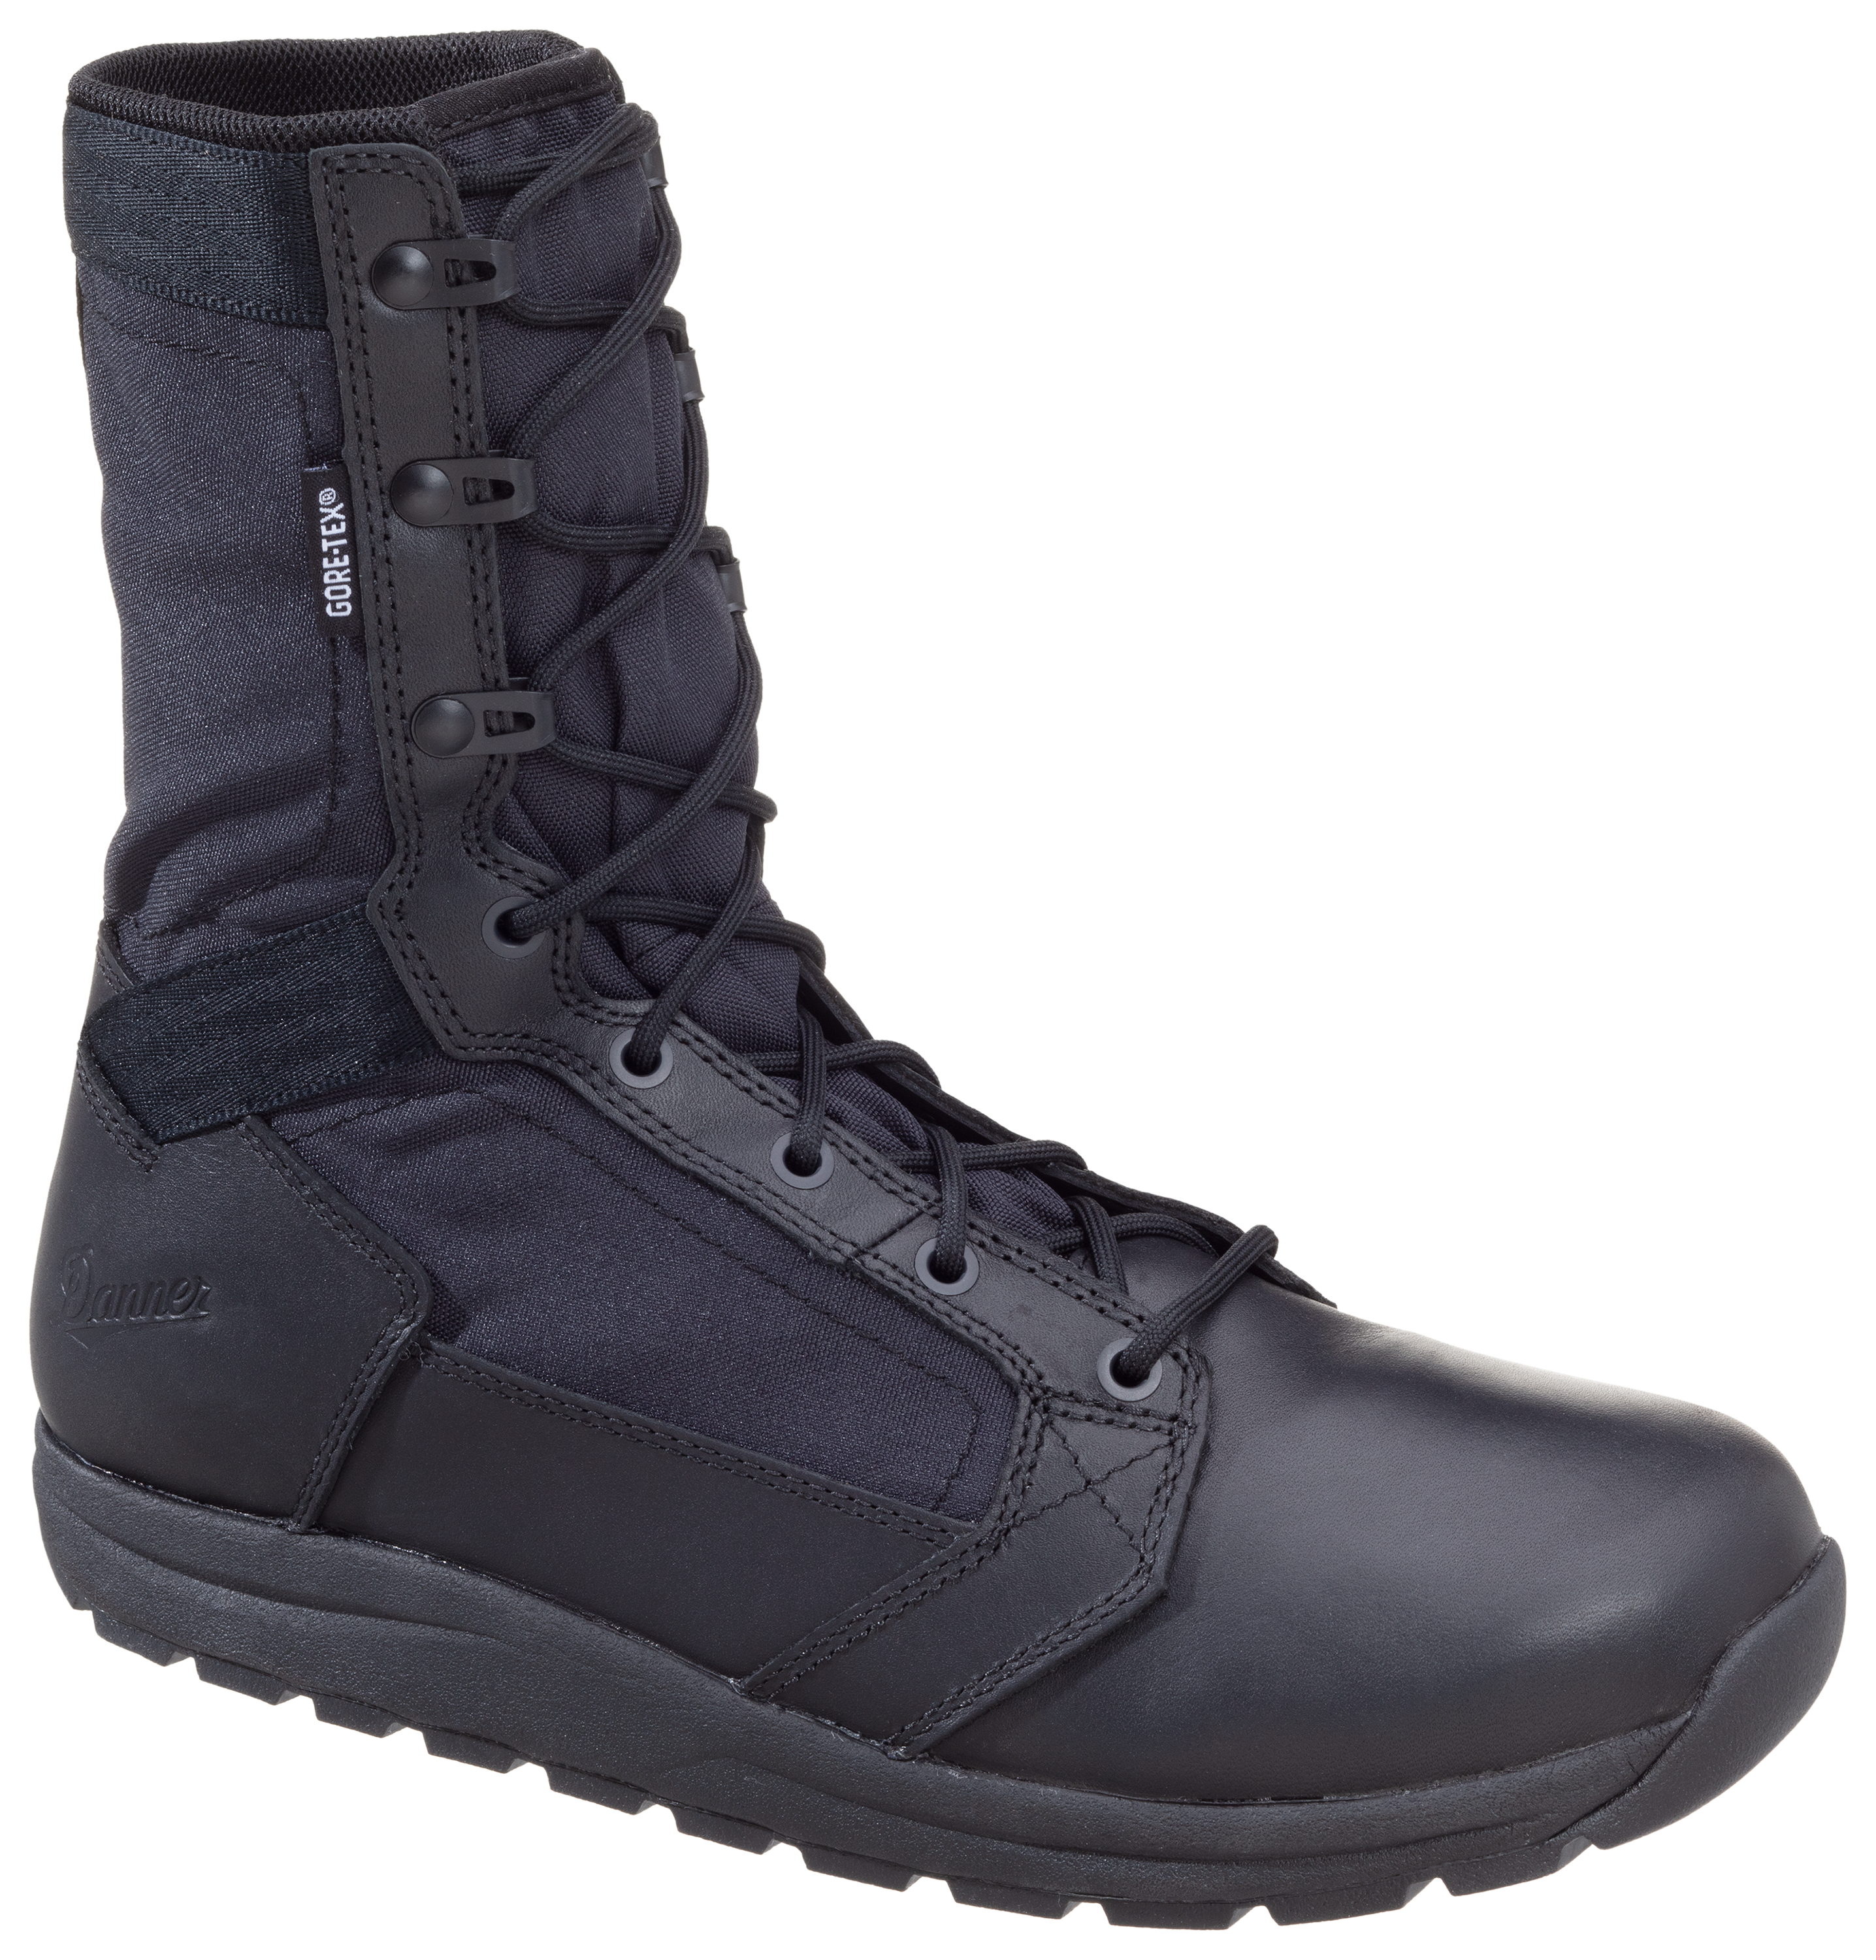 Danner Tachyon GORE-TEX Tactical Duty Boots for Men - Black - 13M